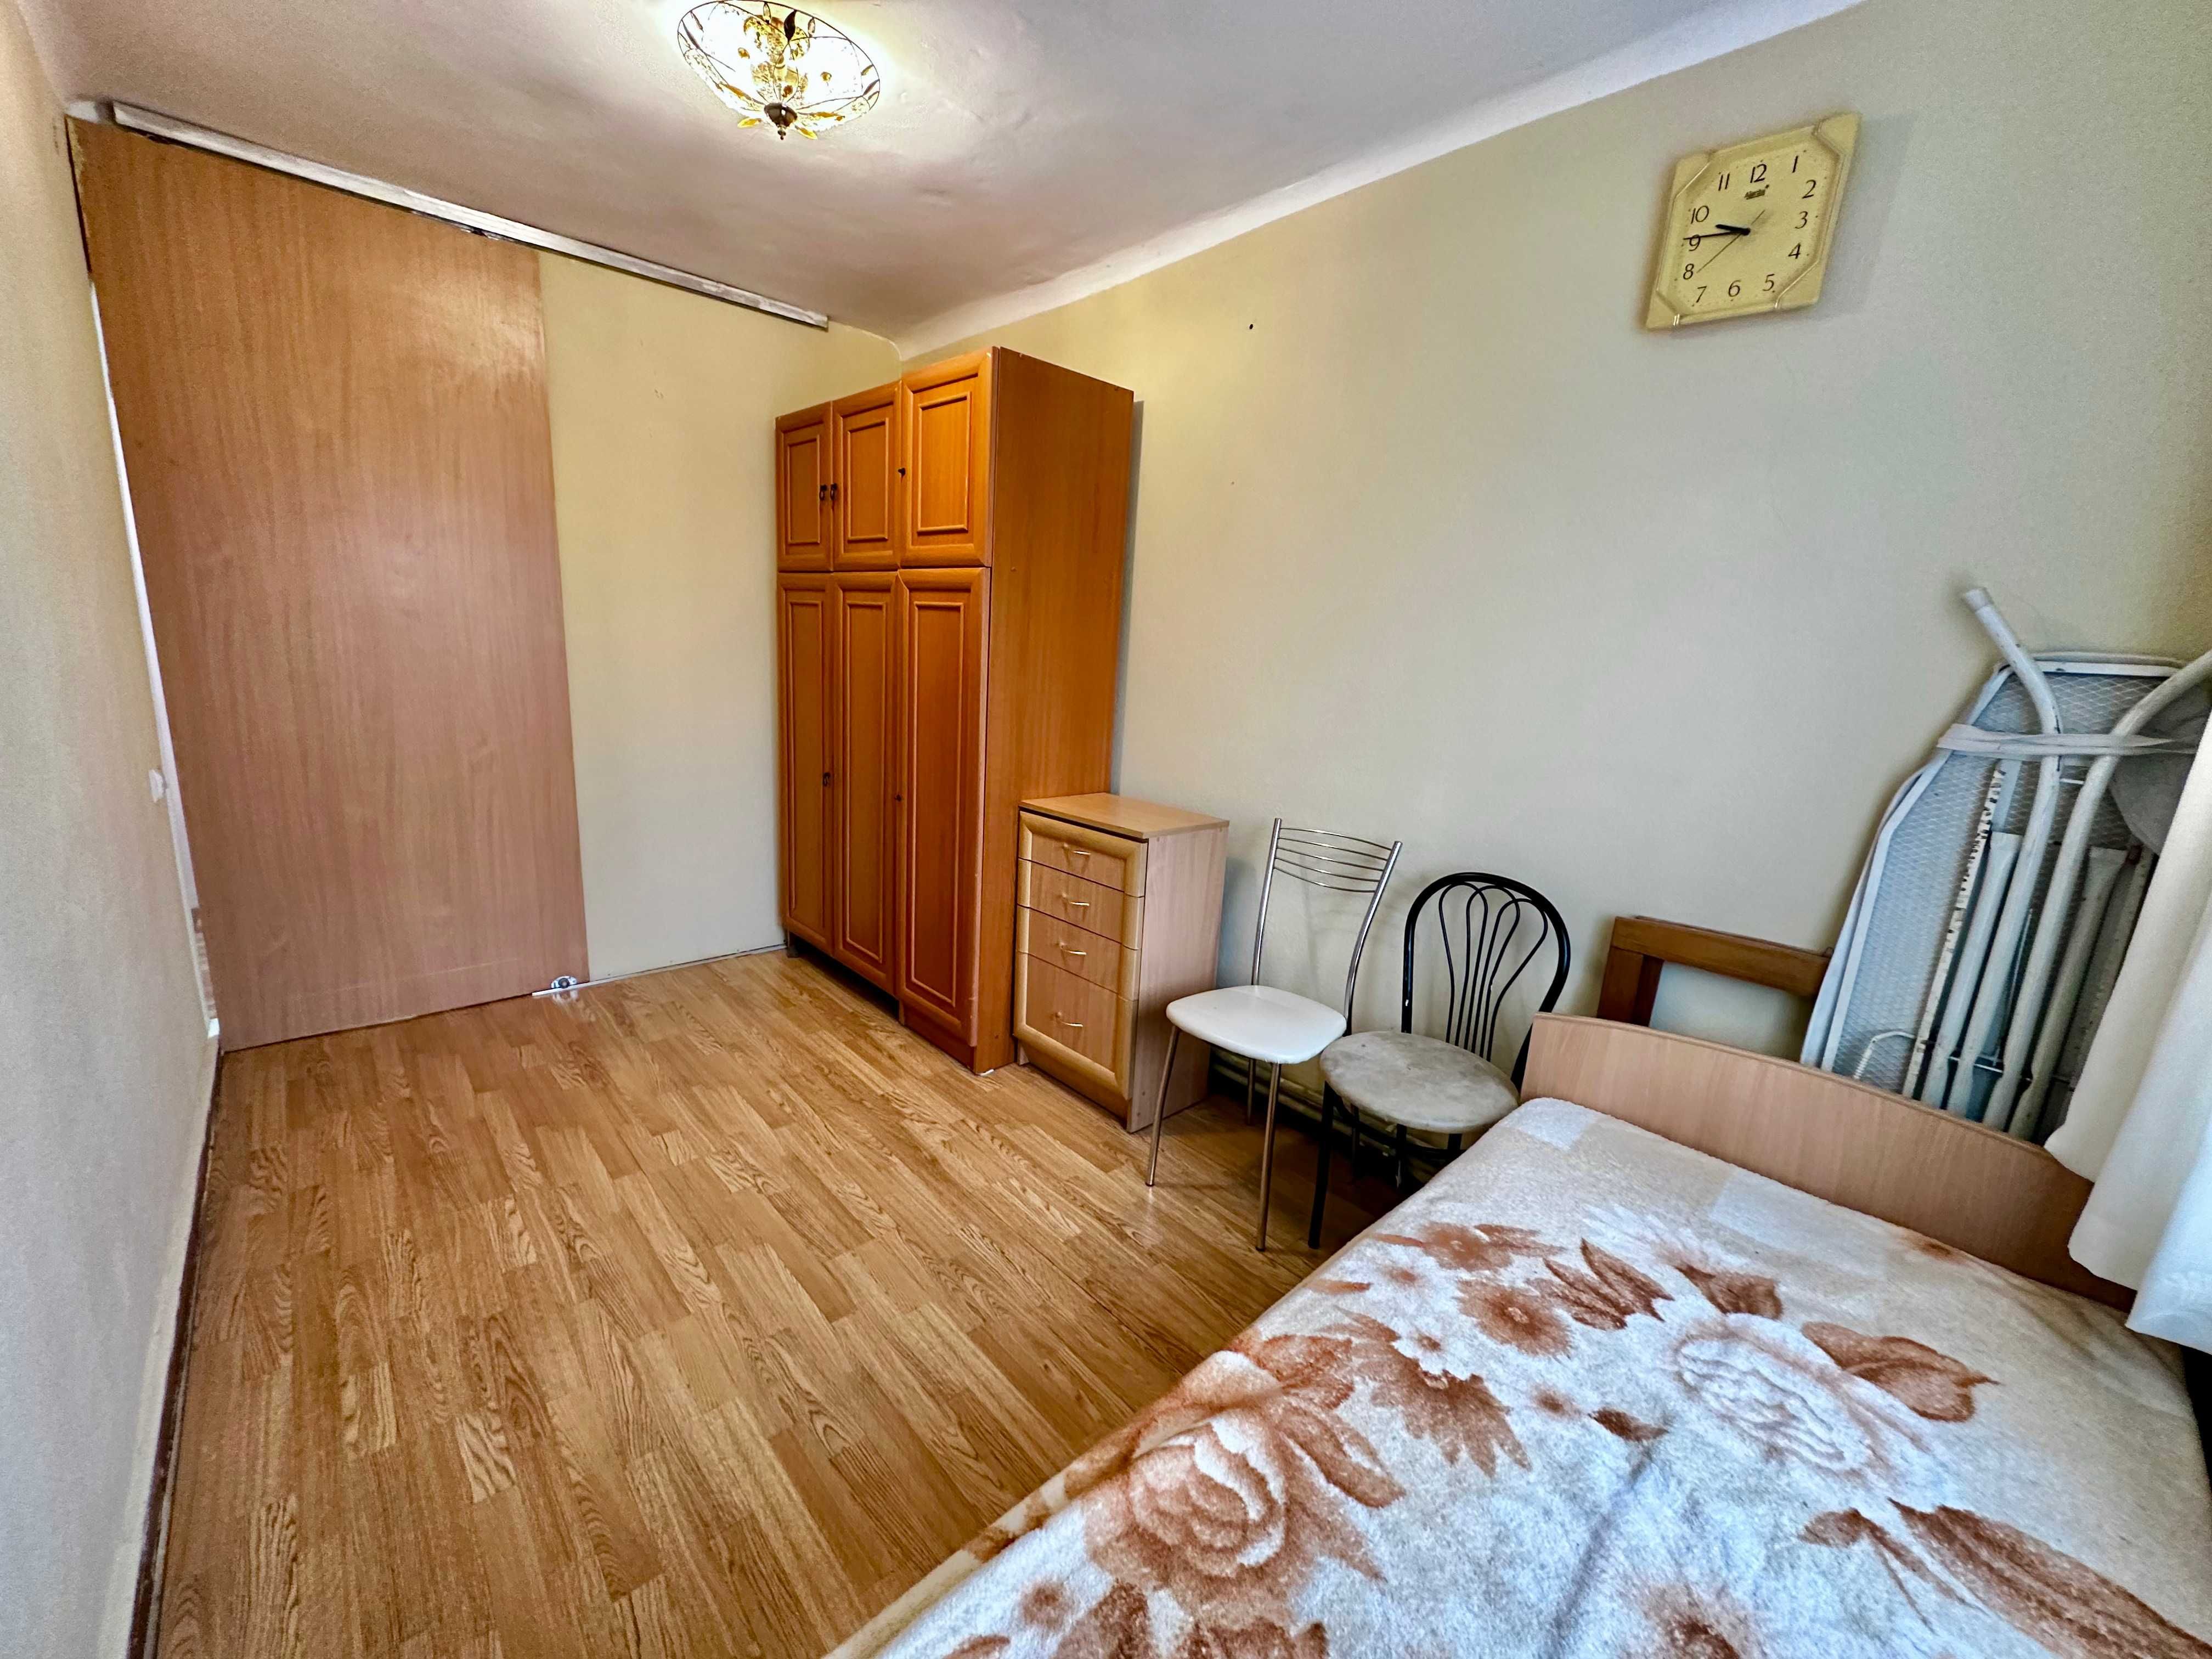 Краща пропозиція 3-кімнатної квартири в м.Дрогобич!!!